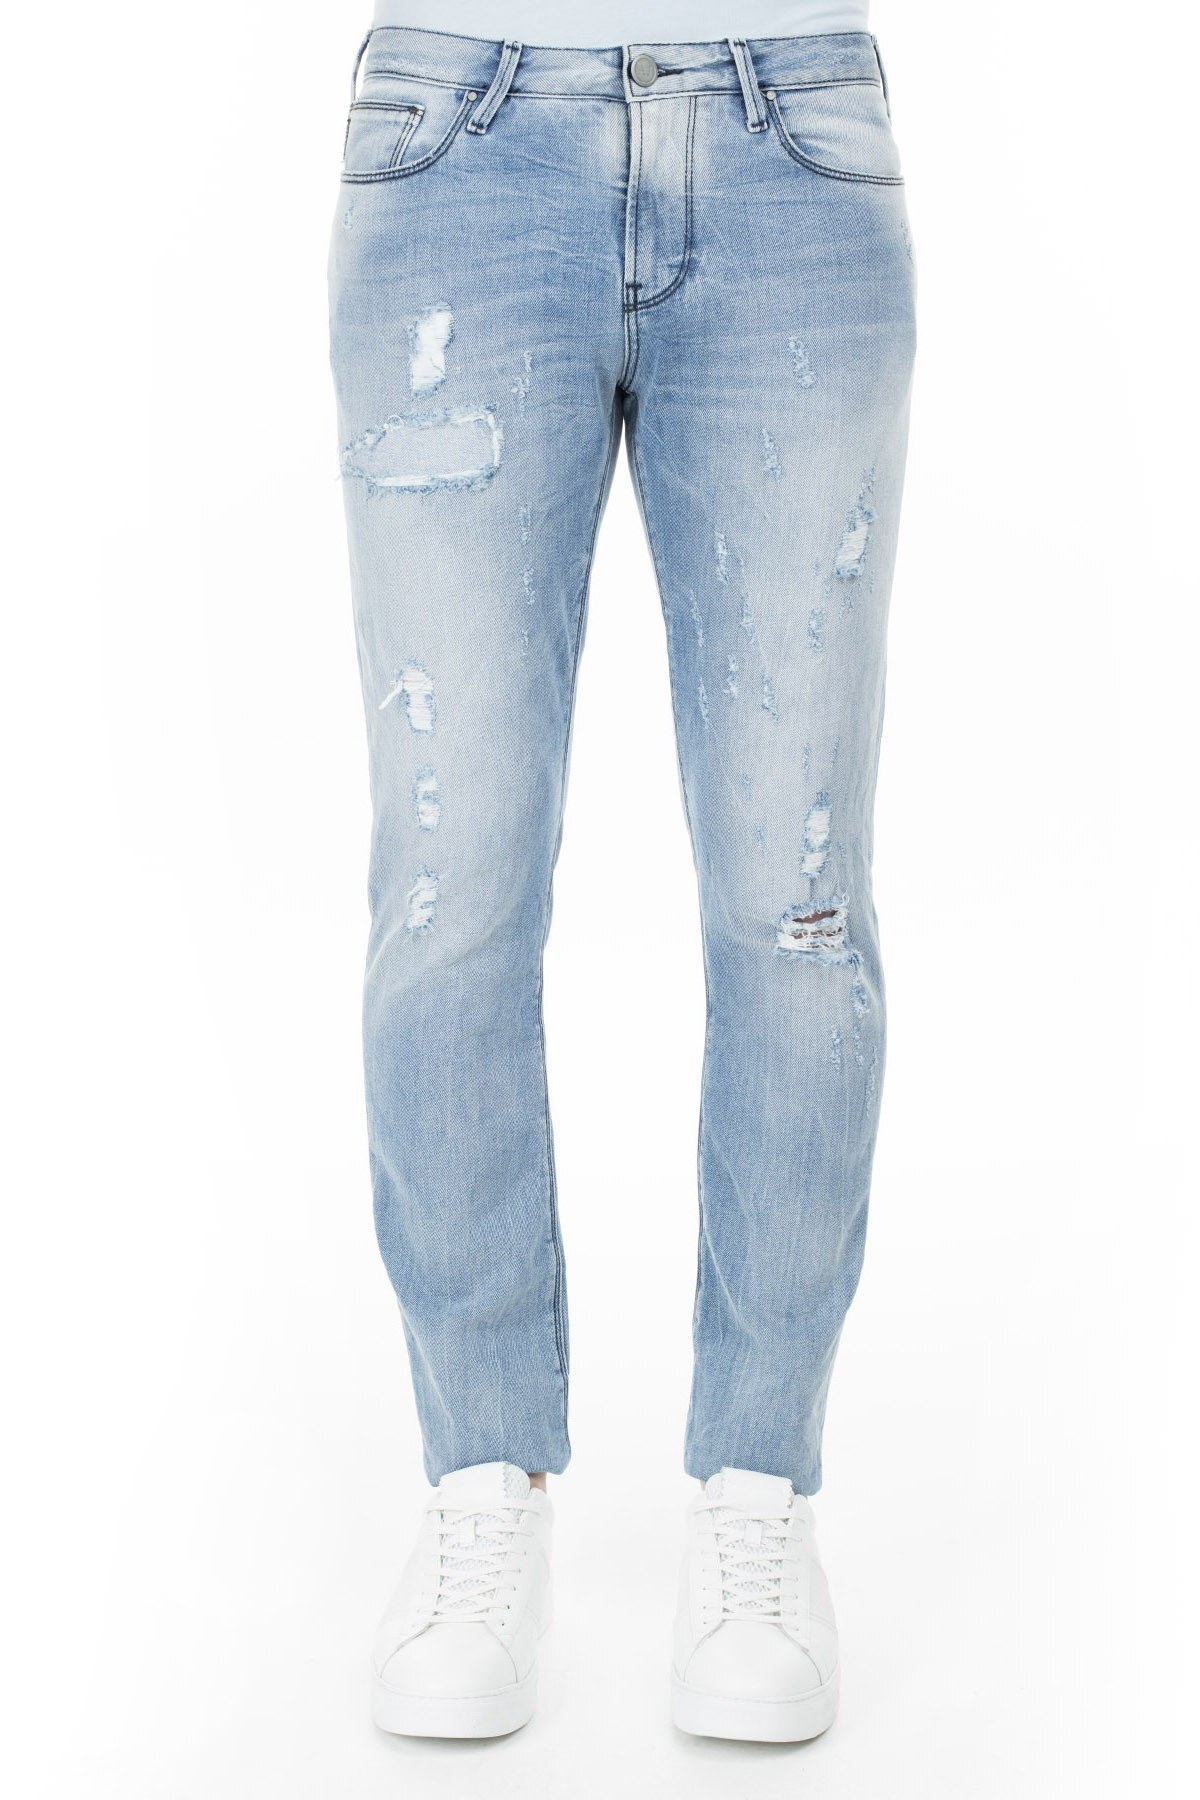 Armani J06 Jeans Erkek Kot Pantolon 3Y6J06 6D1VZ 1500 AÇIK MAVİ